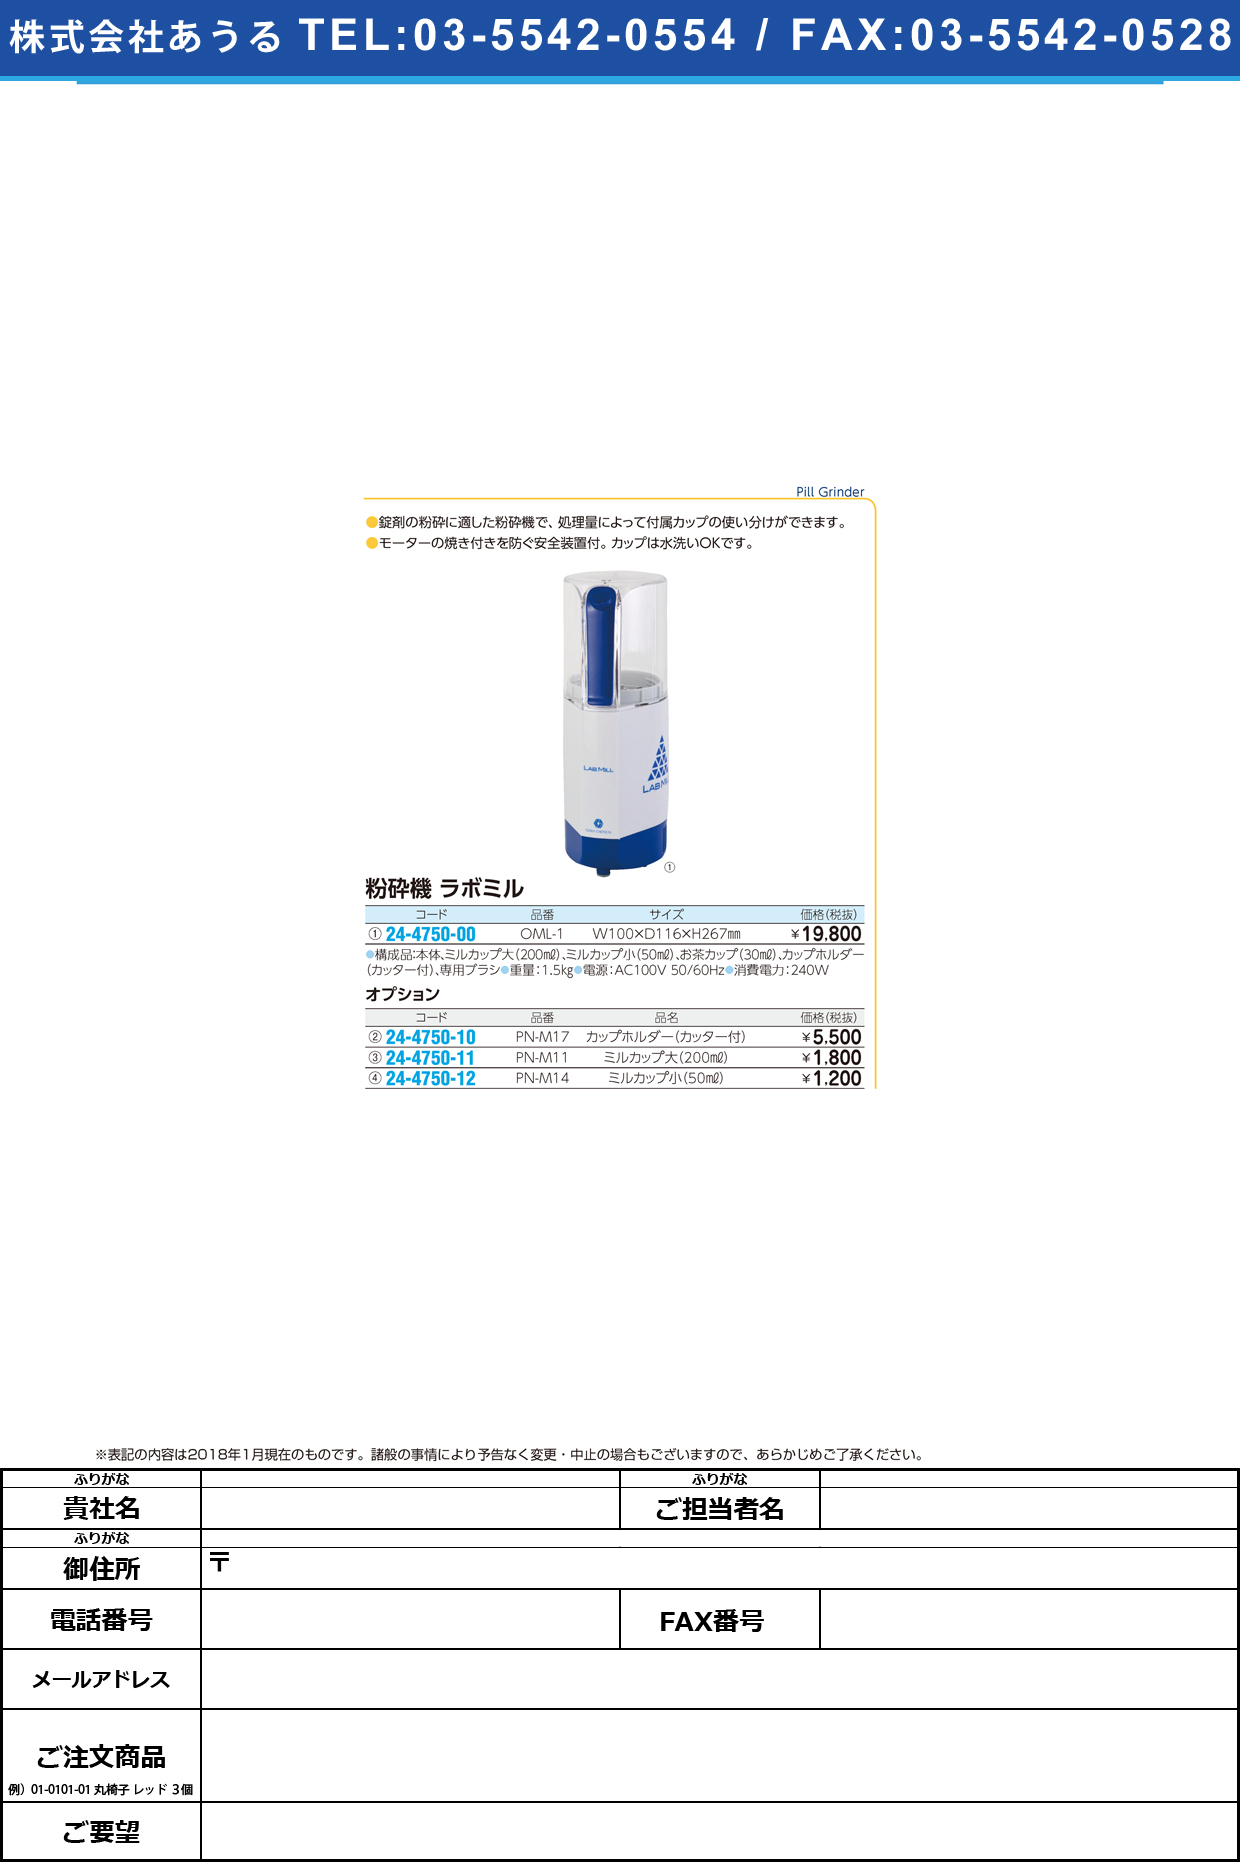 (24-4750-00)粉砕機ラボミル OML-1 ﾌﾝｻｲｷﾗﾎﾞﾐﾙ【1台単位】【2019年カタログ商品】